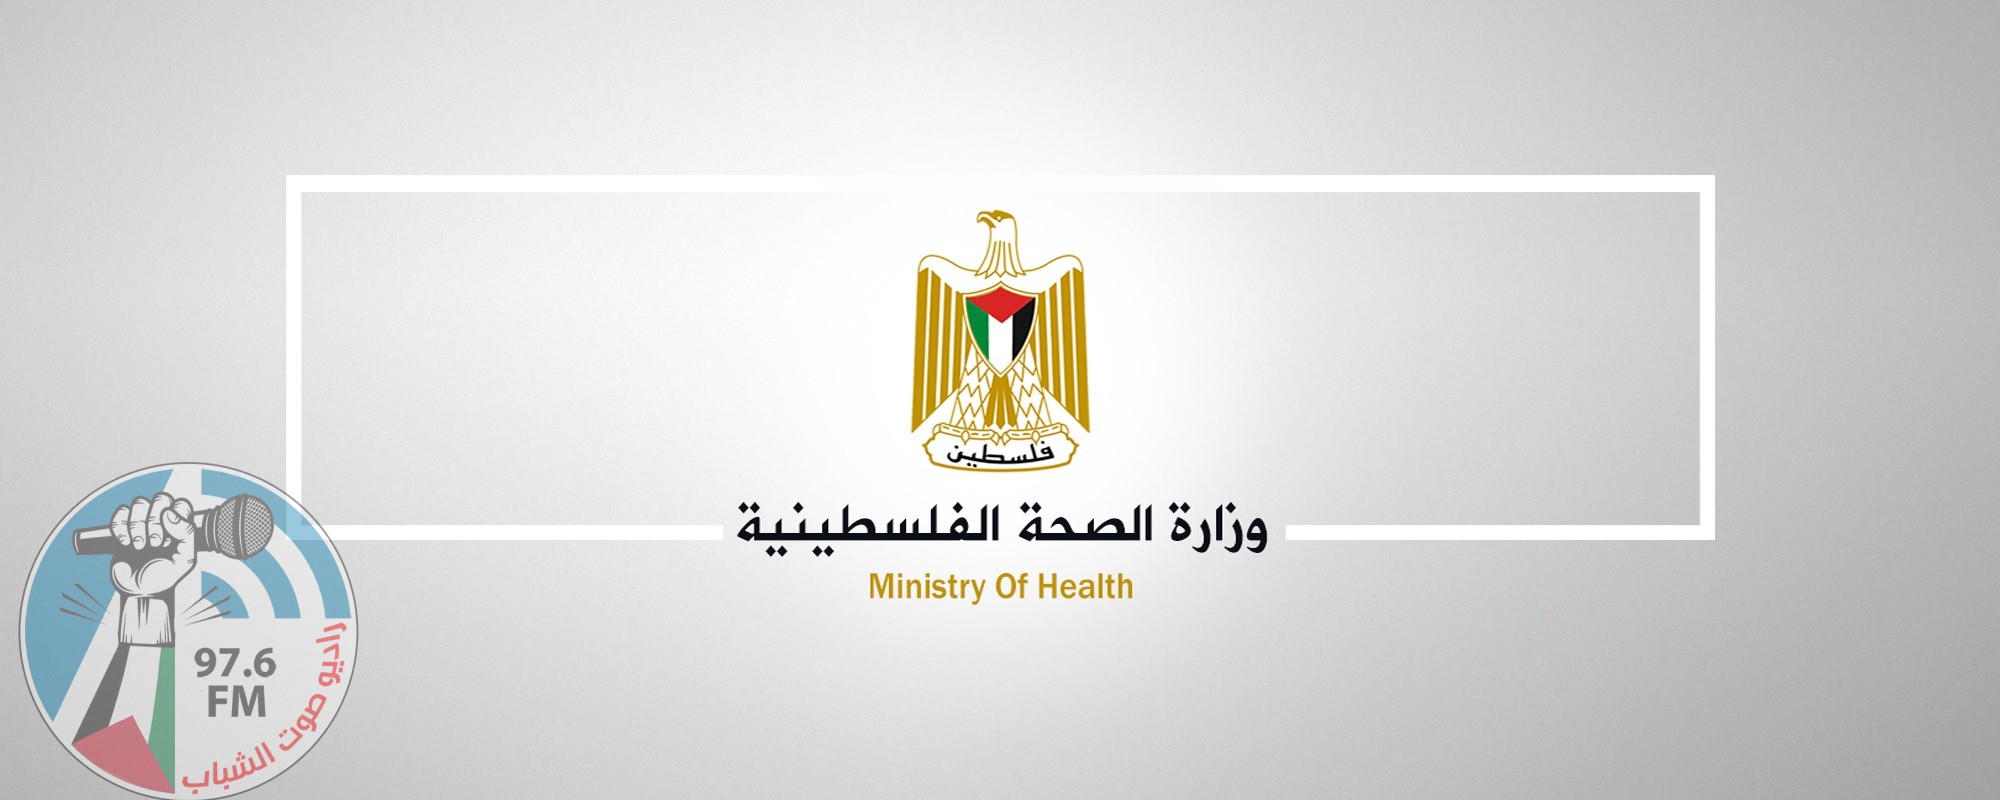 وزارة الصحة تدعو الأطباء لعدم الإضراب في هذا الوقت “الحسّاس”